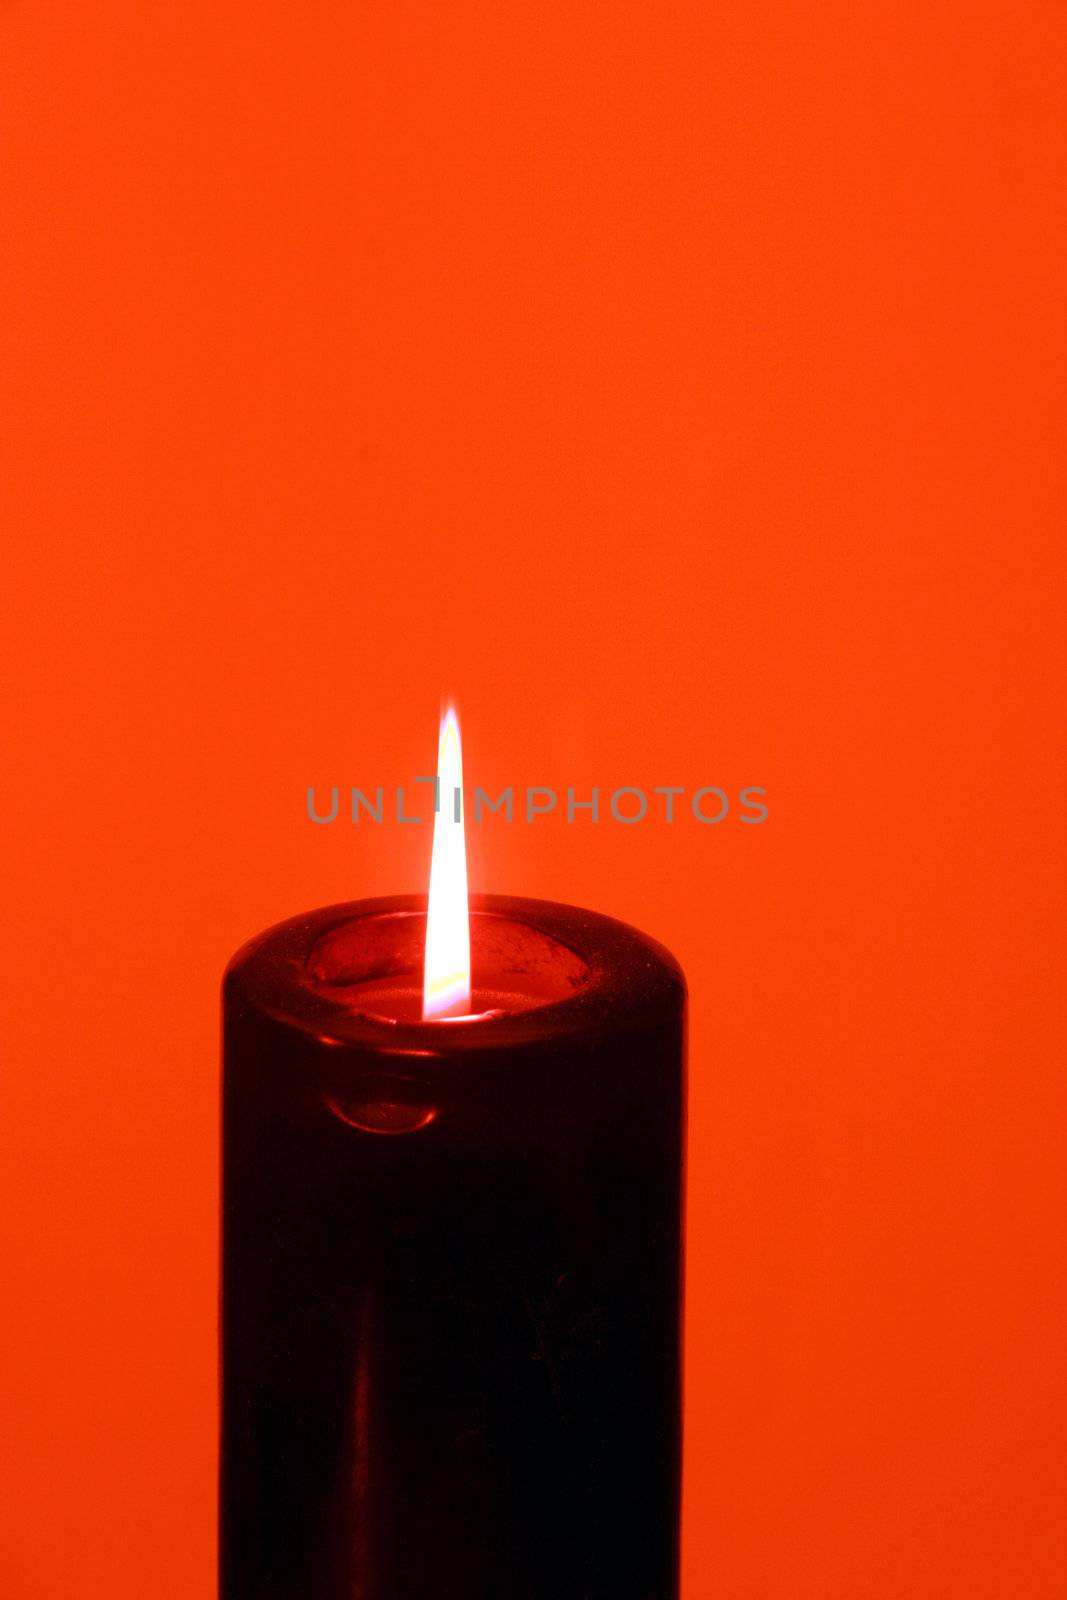 Red candel light